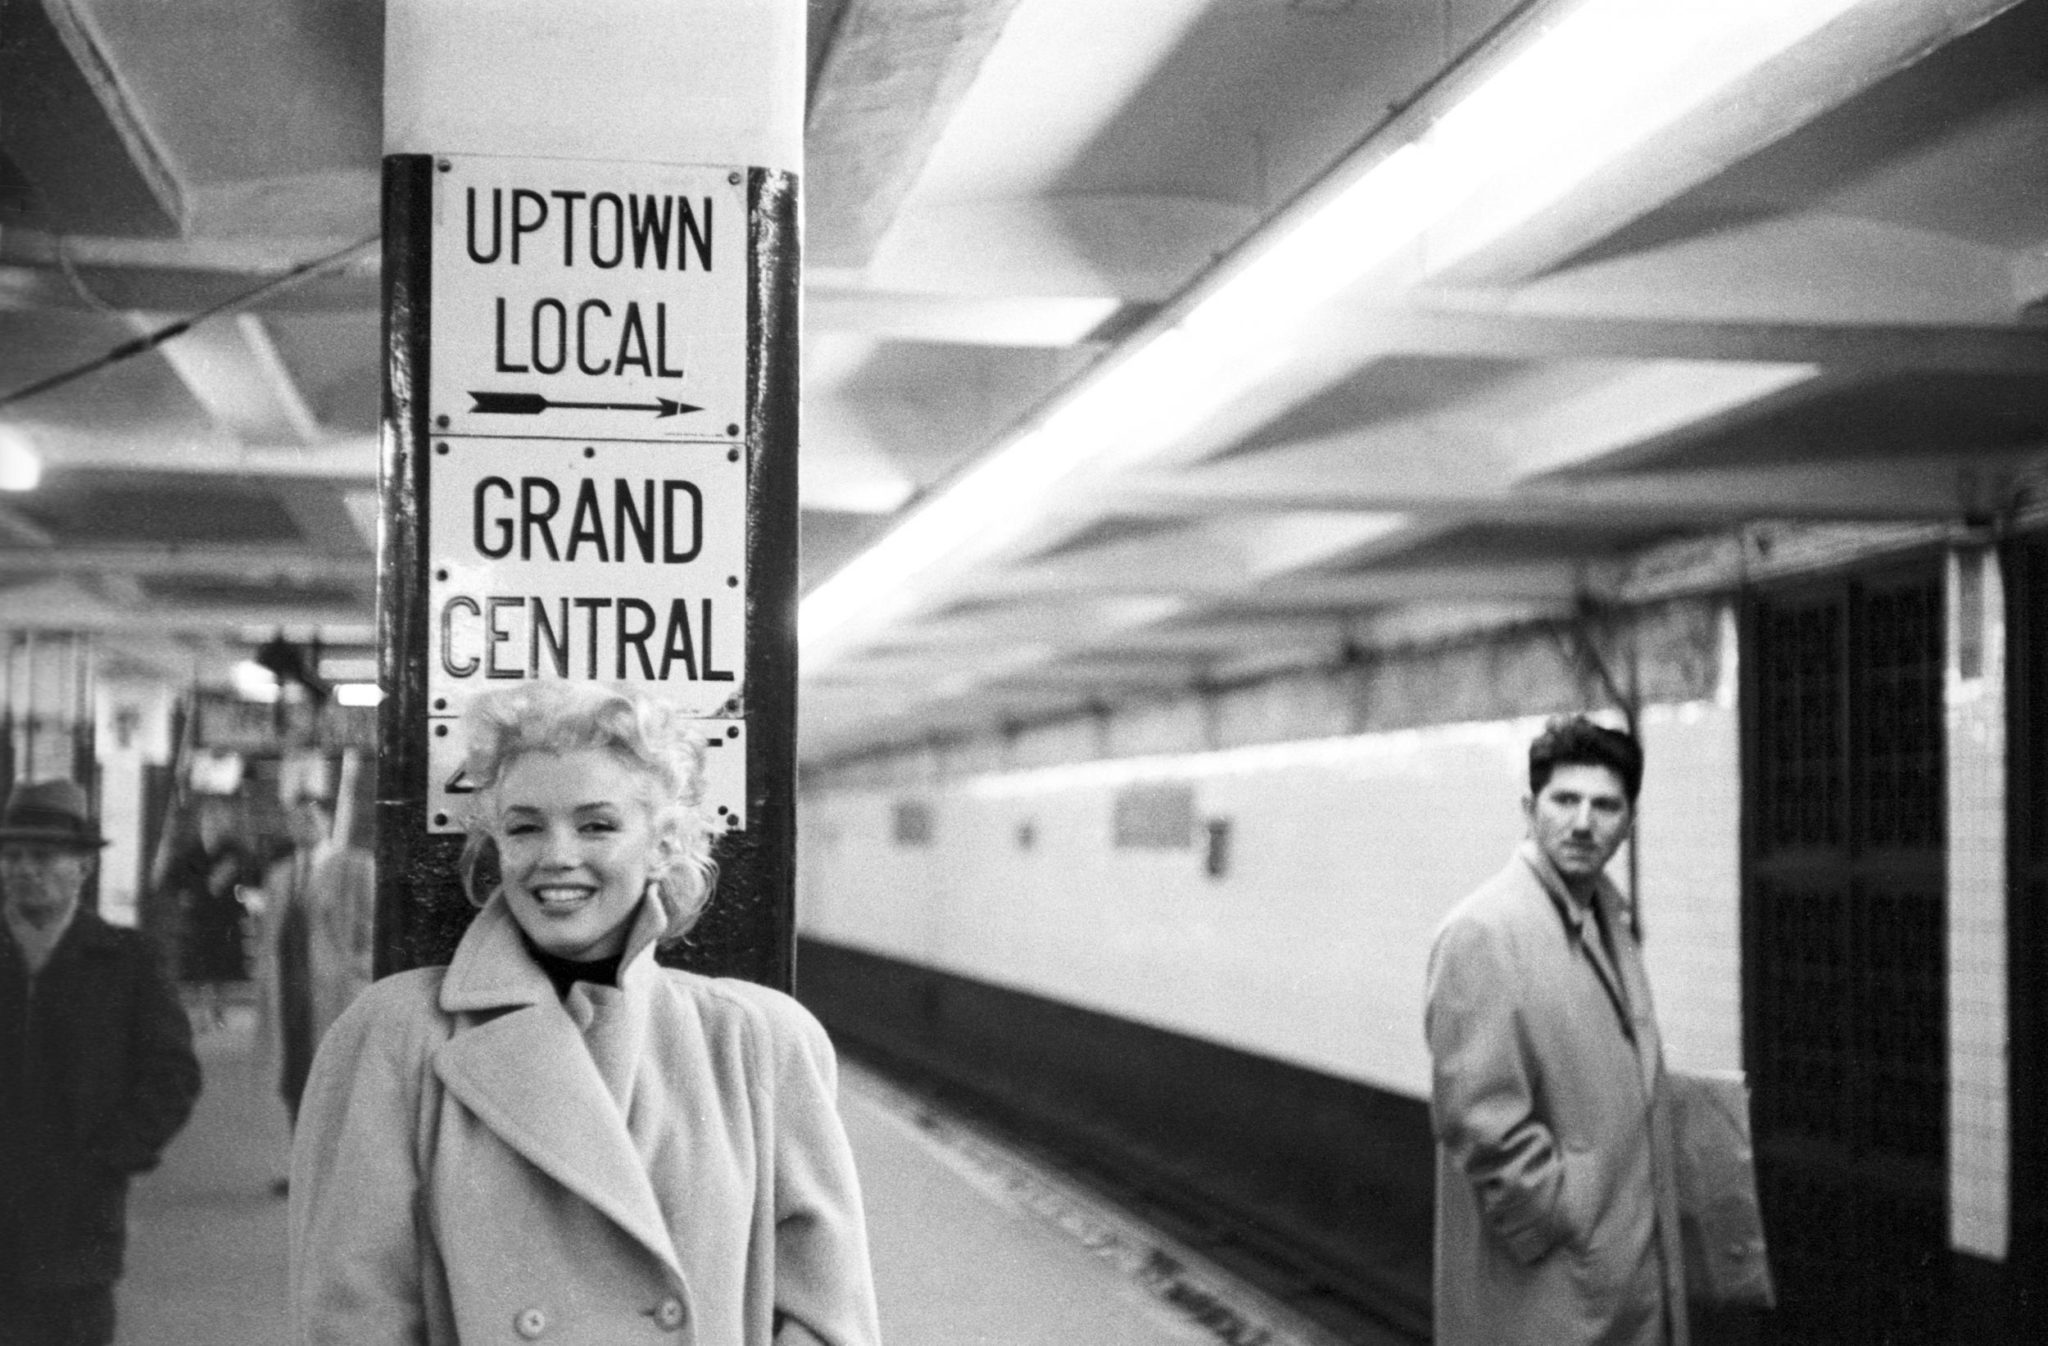 Sie liebte die Stadt – 4 kurze Videos zeigen Marilyn Monroe in New York (gesamt 8:57 Min.)